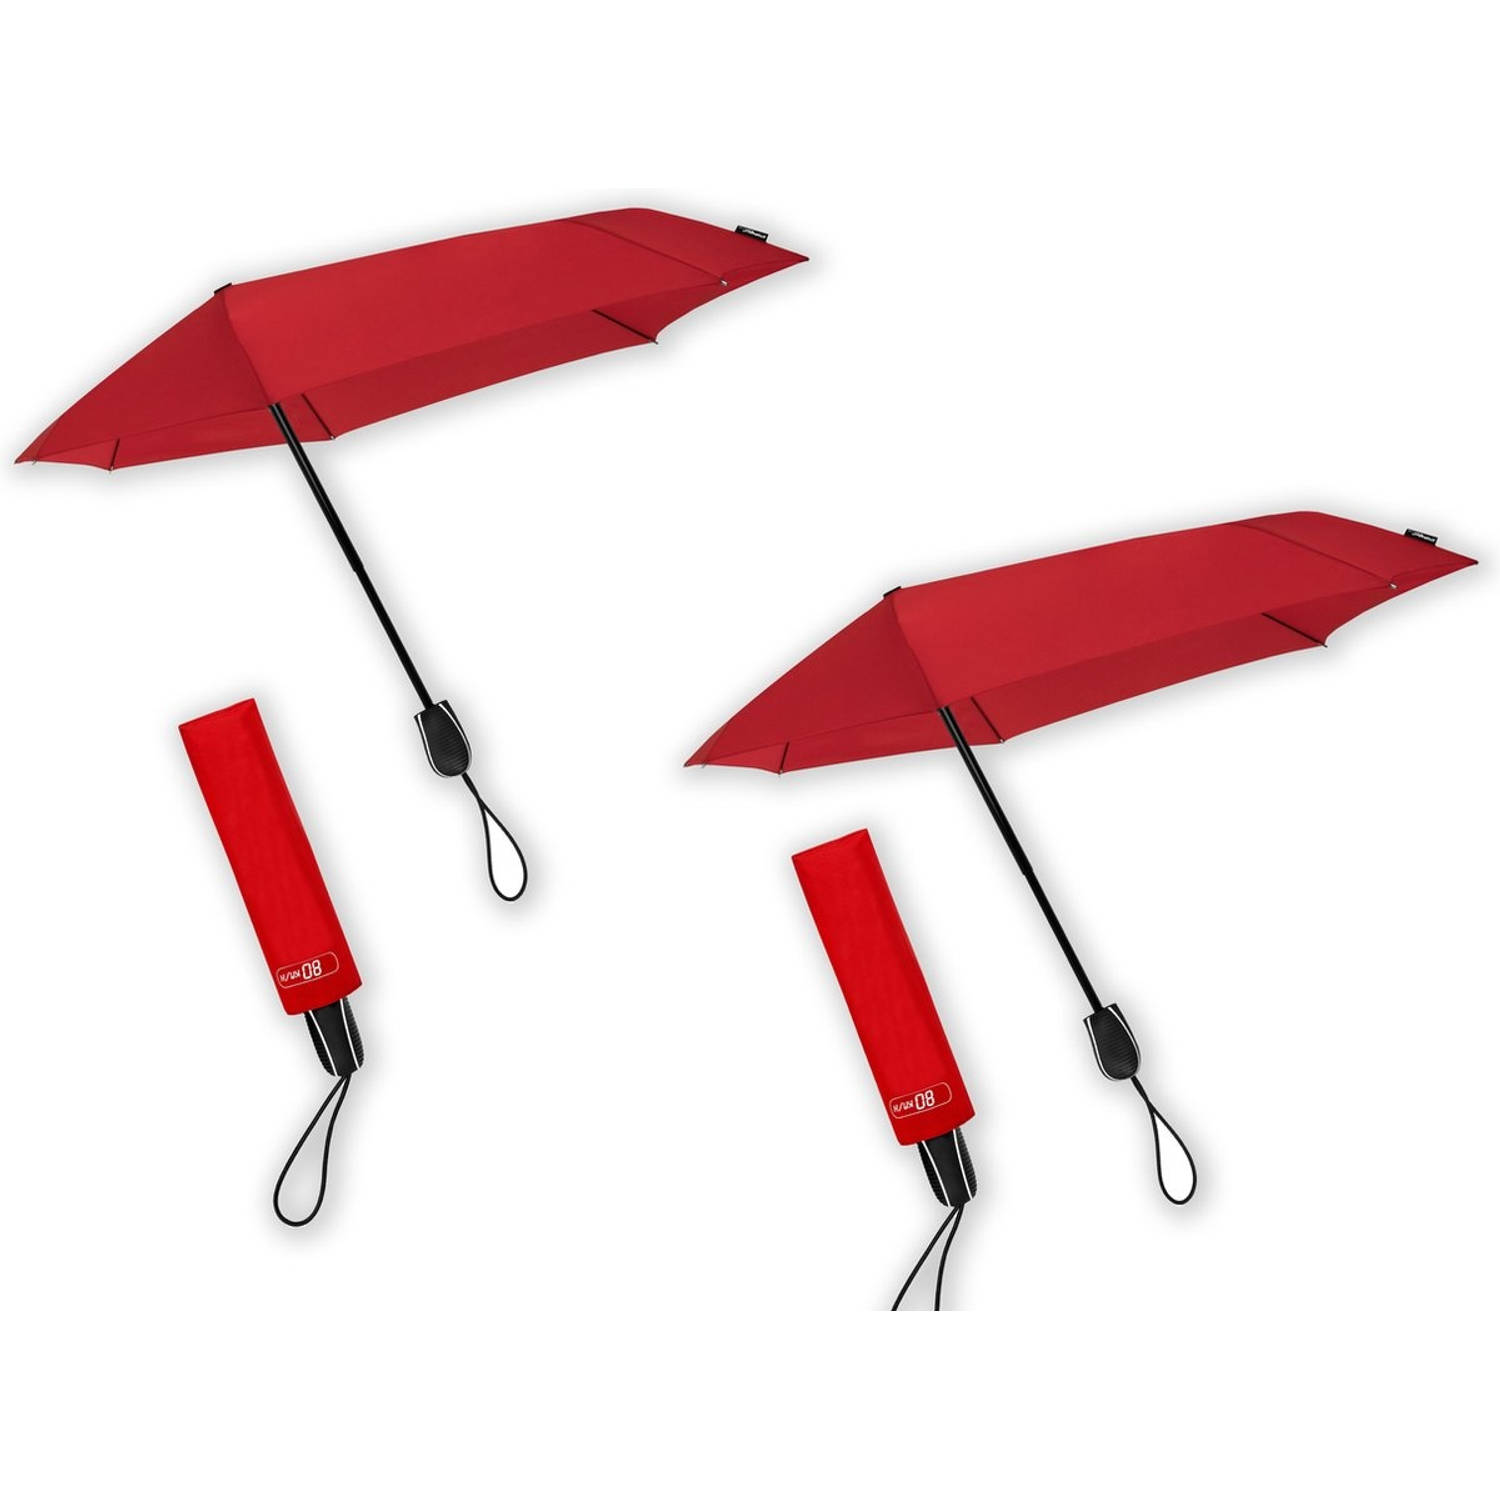 Paraplu tegen storm tot 80 km - 2 stuks in de verpakking - Stormparaplu geschikt voor Windvlagen tot 80km/h - Ø 100 cm - Rood